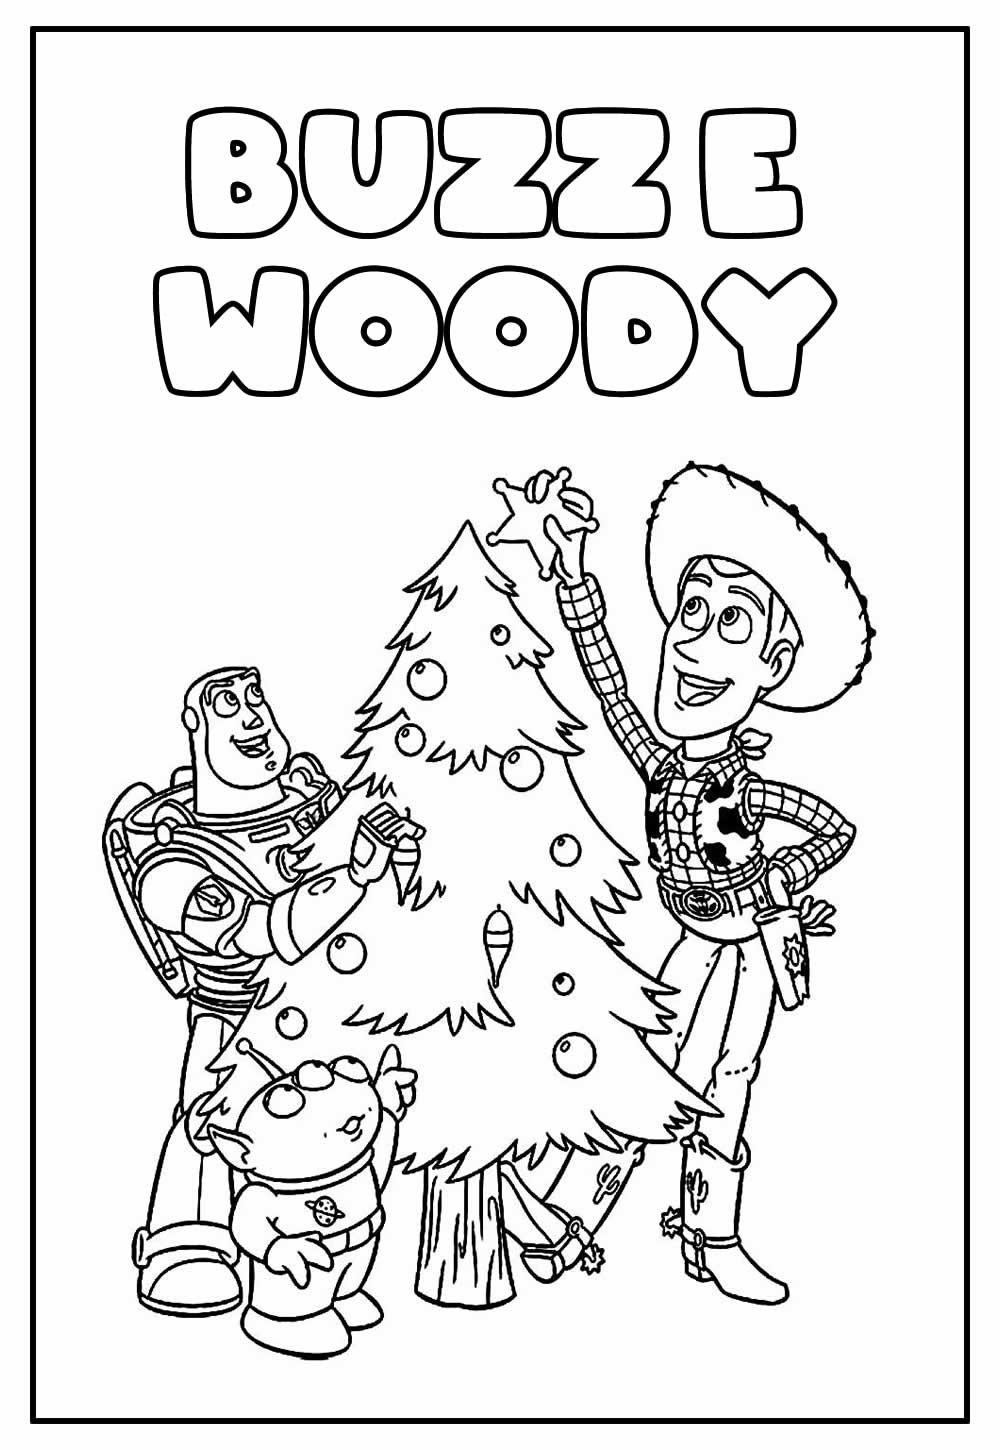 Desenho Educativo para colorir de Buzz Lightyear e do Xerife Woody